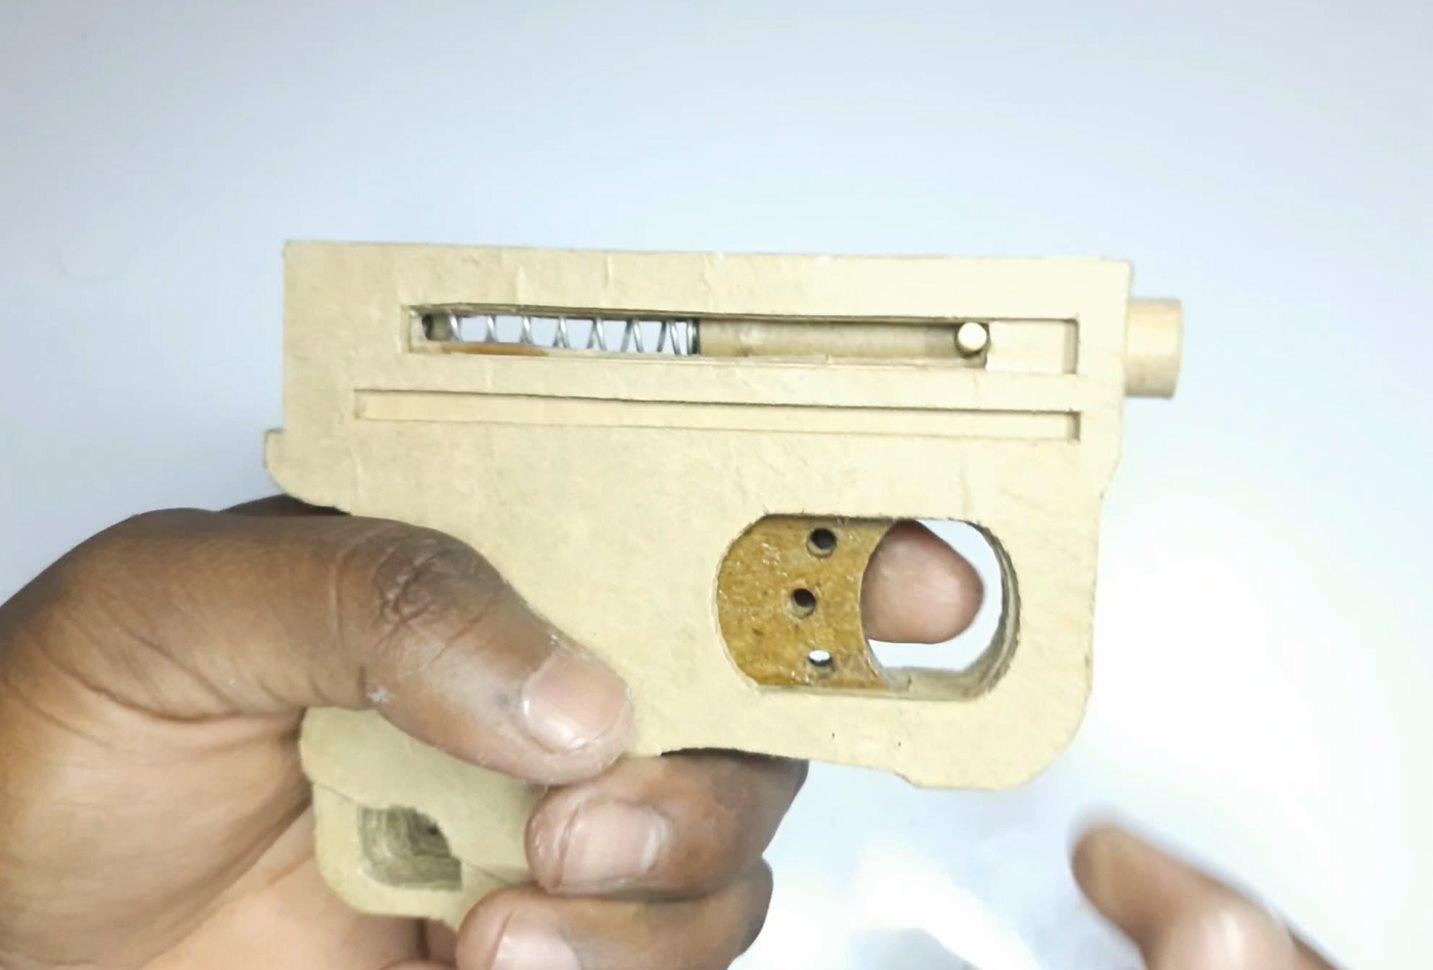 用纸板做一把玩具来复枪制作过程+图纸wgog902纸板枪制作方法 纸板手工枪 手工纸板枪 纸板枪设计图 自制纸板枪 – wgog纸板手工全系列